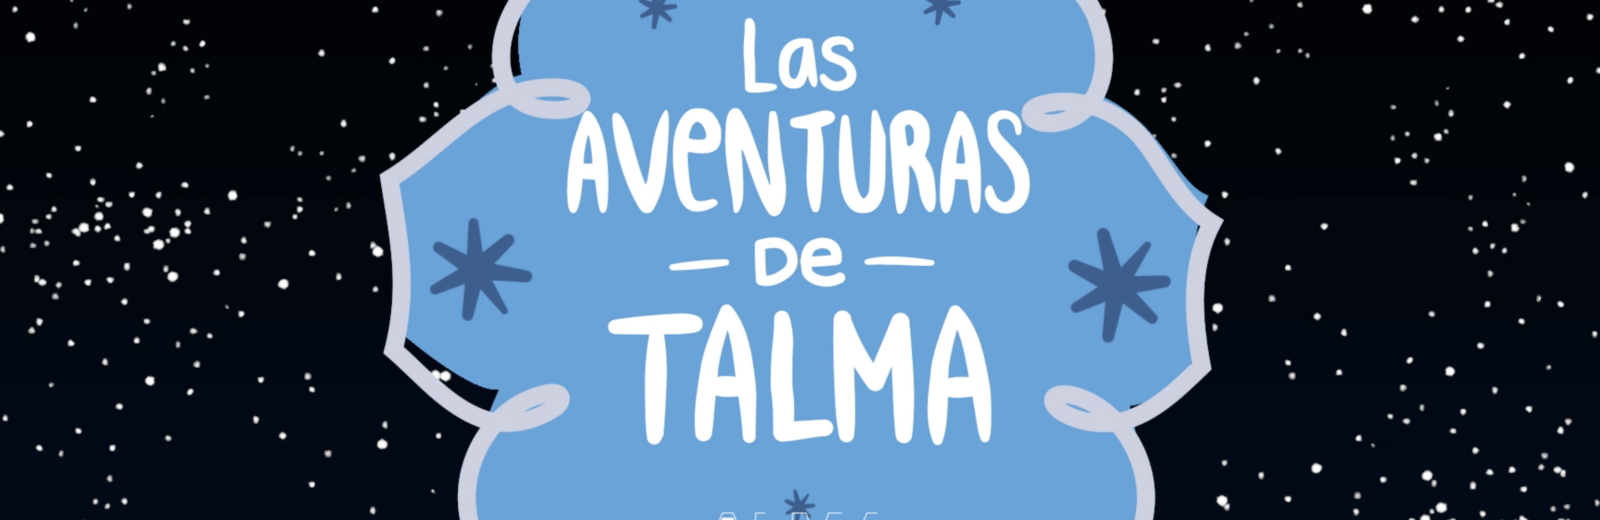 Serie "Las aventuras de Talma"